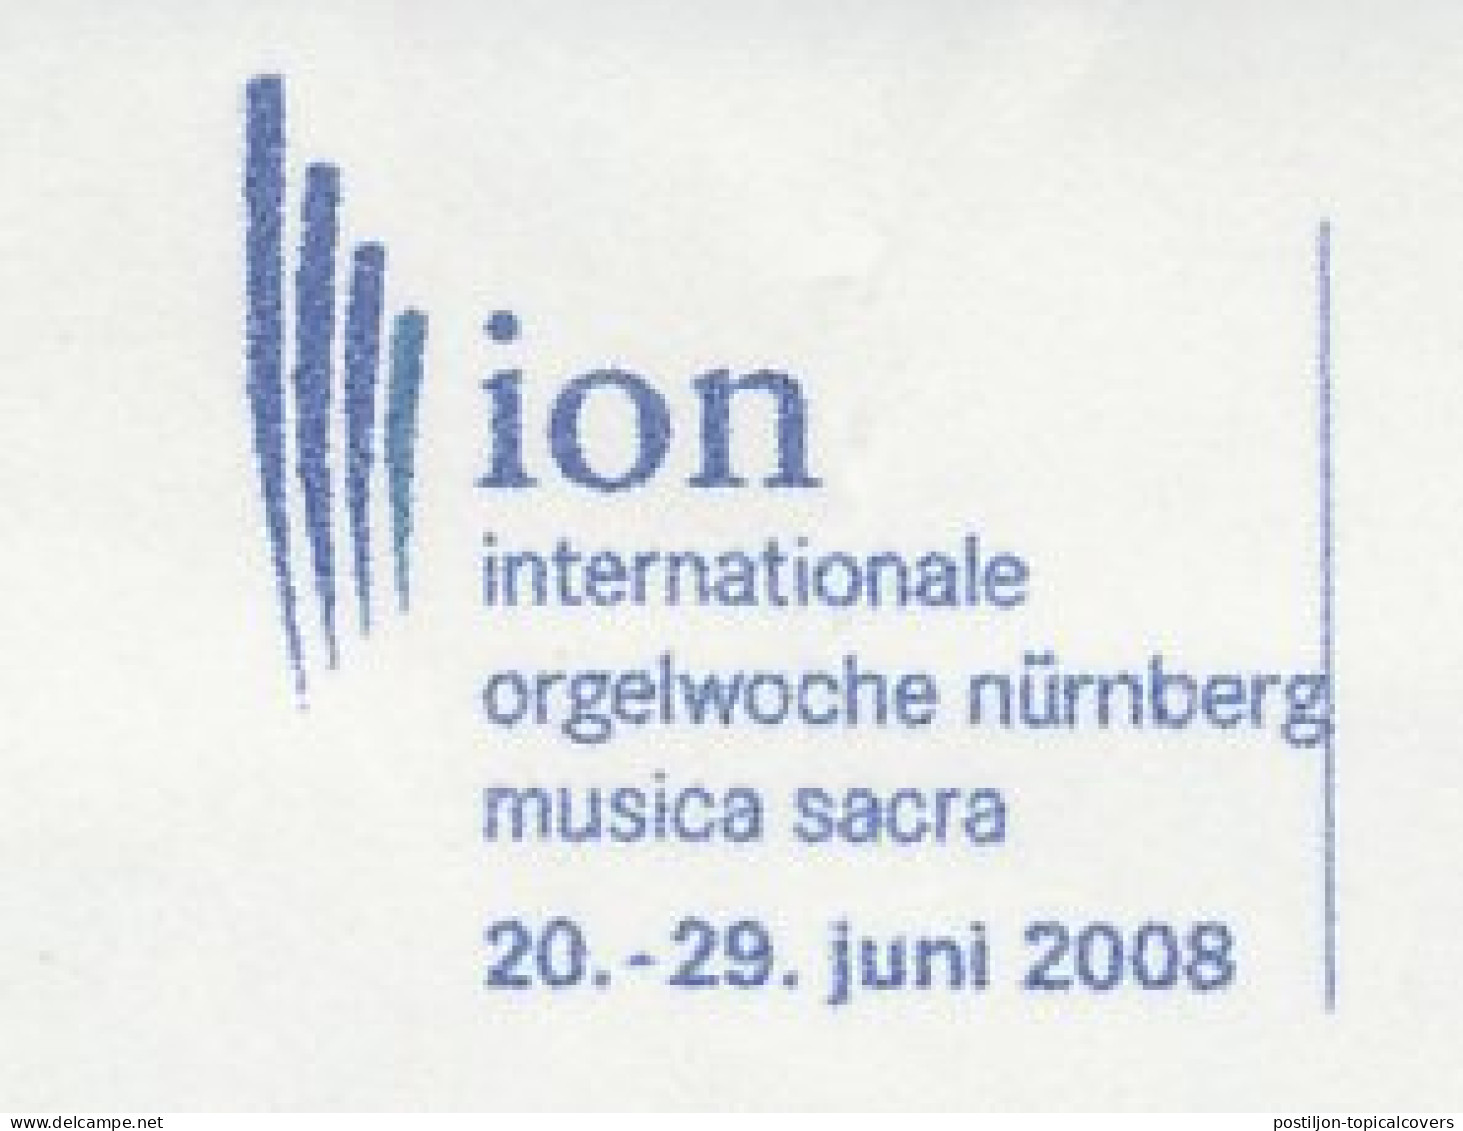 Meter Cut Germany 2008 International Organ Week Nurnberg 2008 - ION - Musik